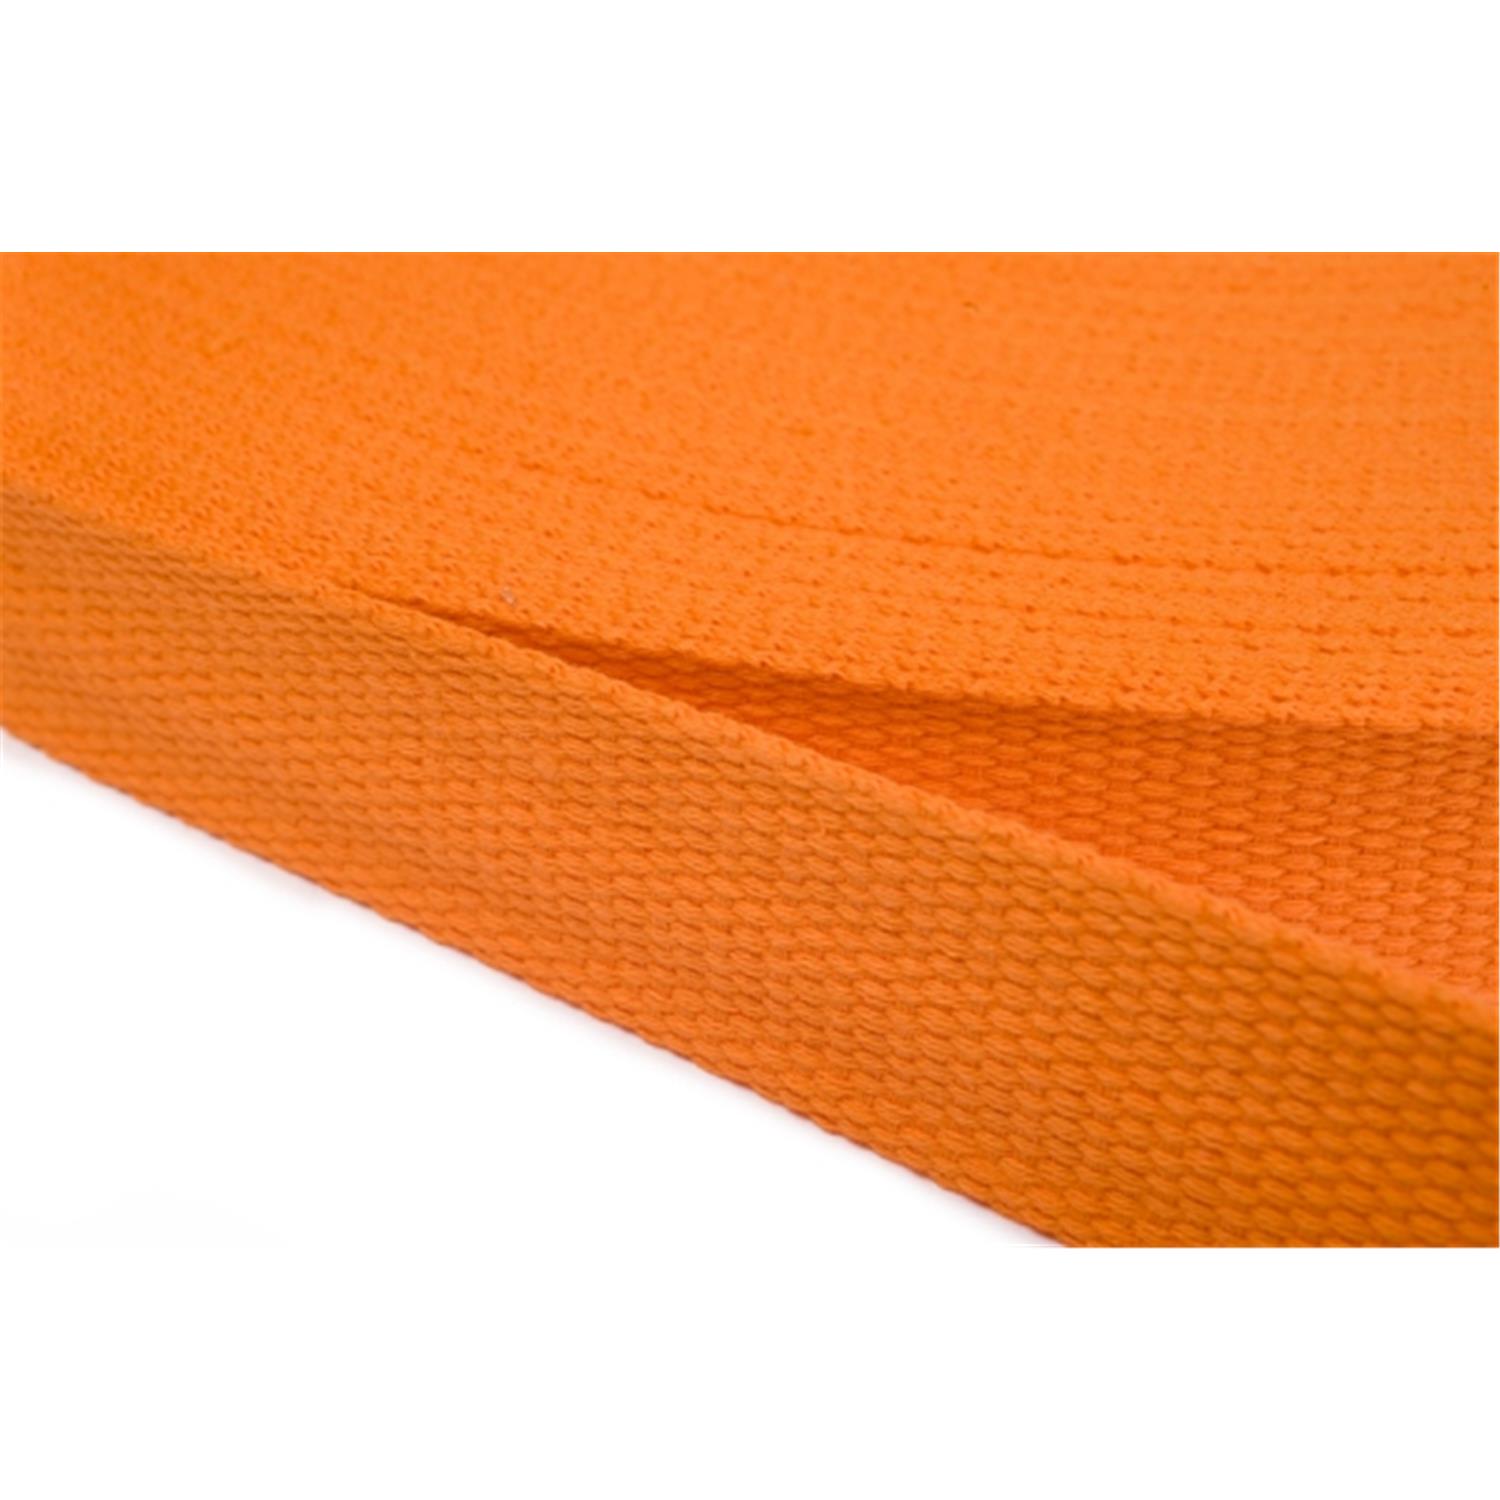 Gurtband aus Baumwolle 15mm in 20 Farben 06 - orange 6 Meter